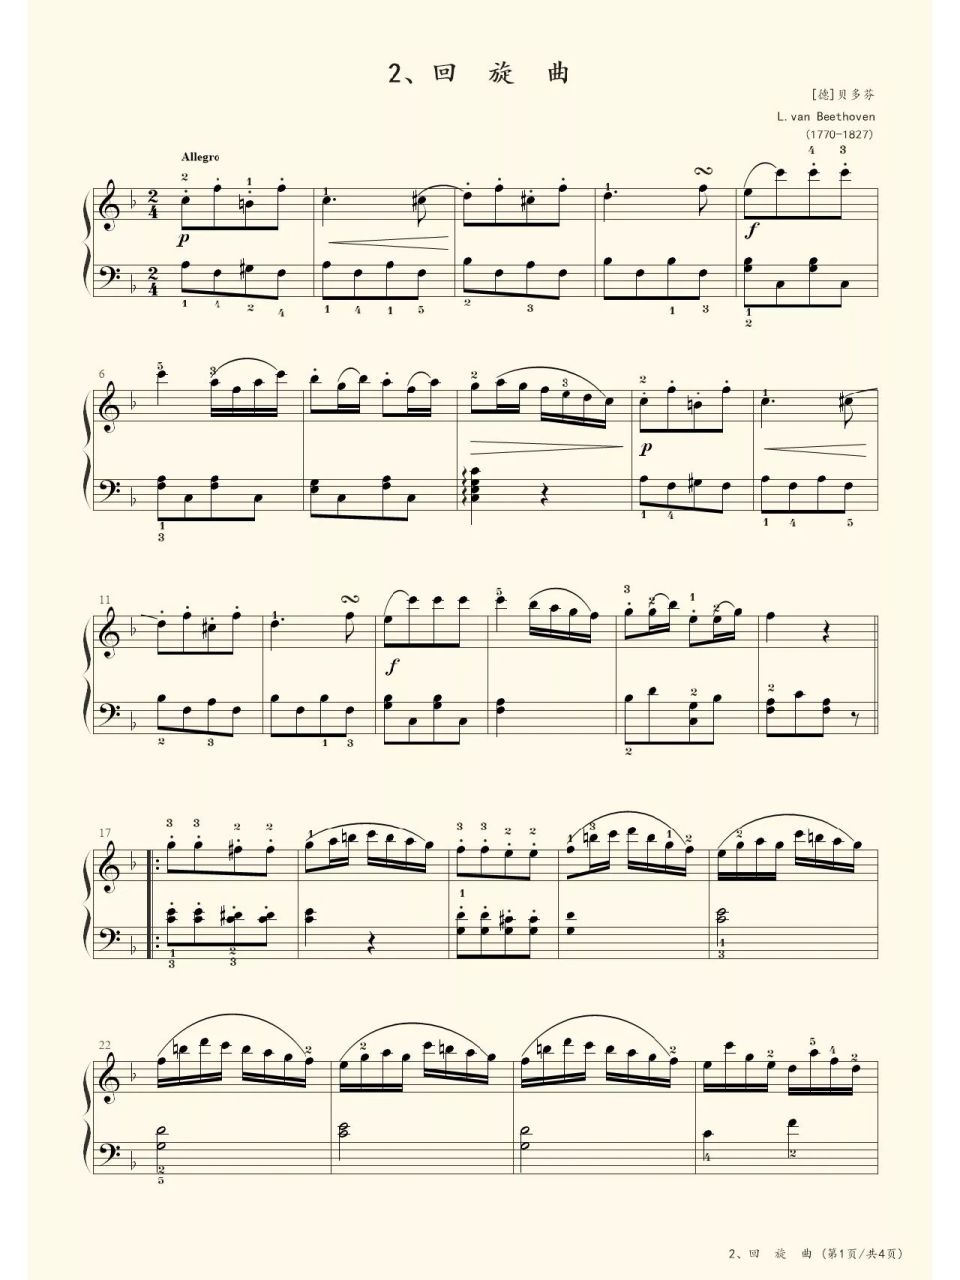 央音五级·大型乐曲(完) 回旋曲    贝多芬 曲谱仅供参考 考级曲目以